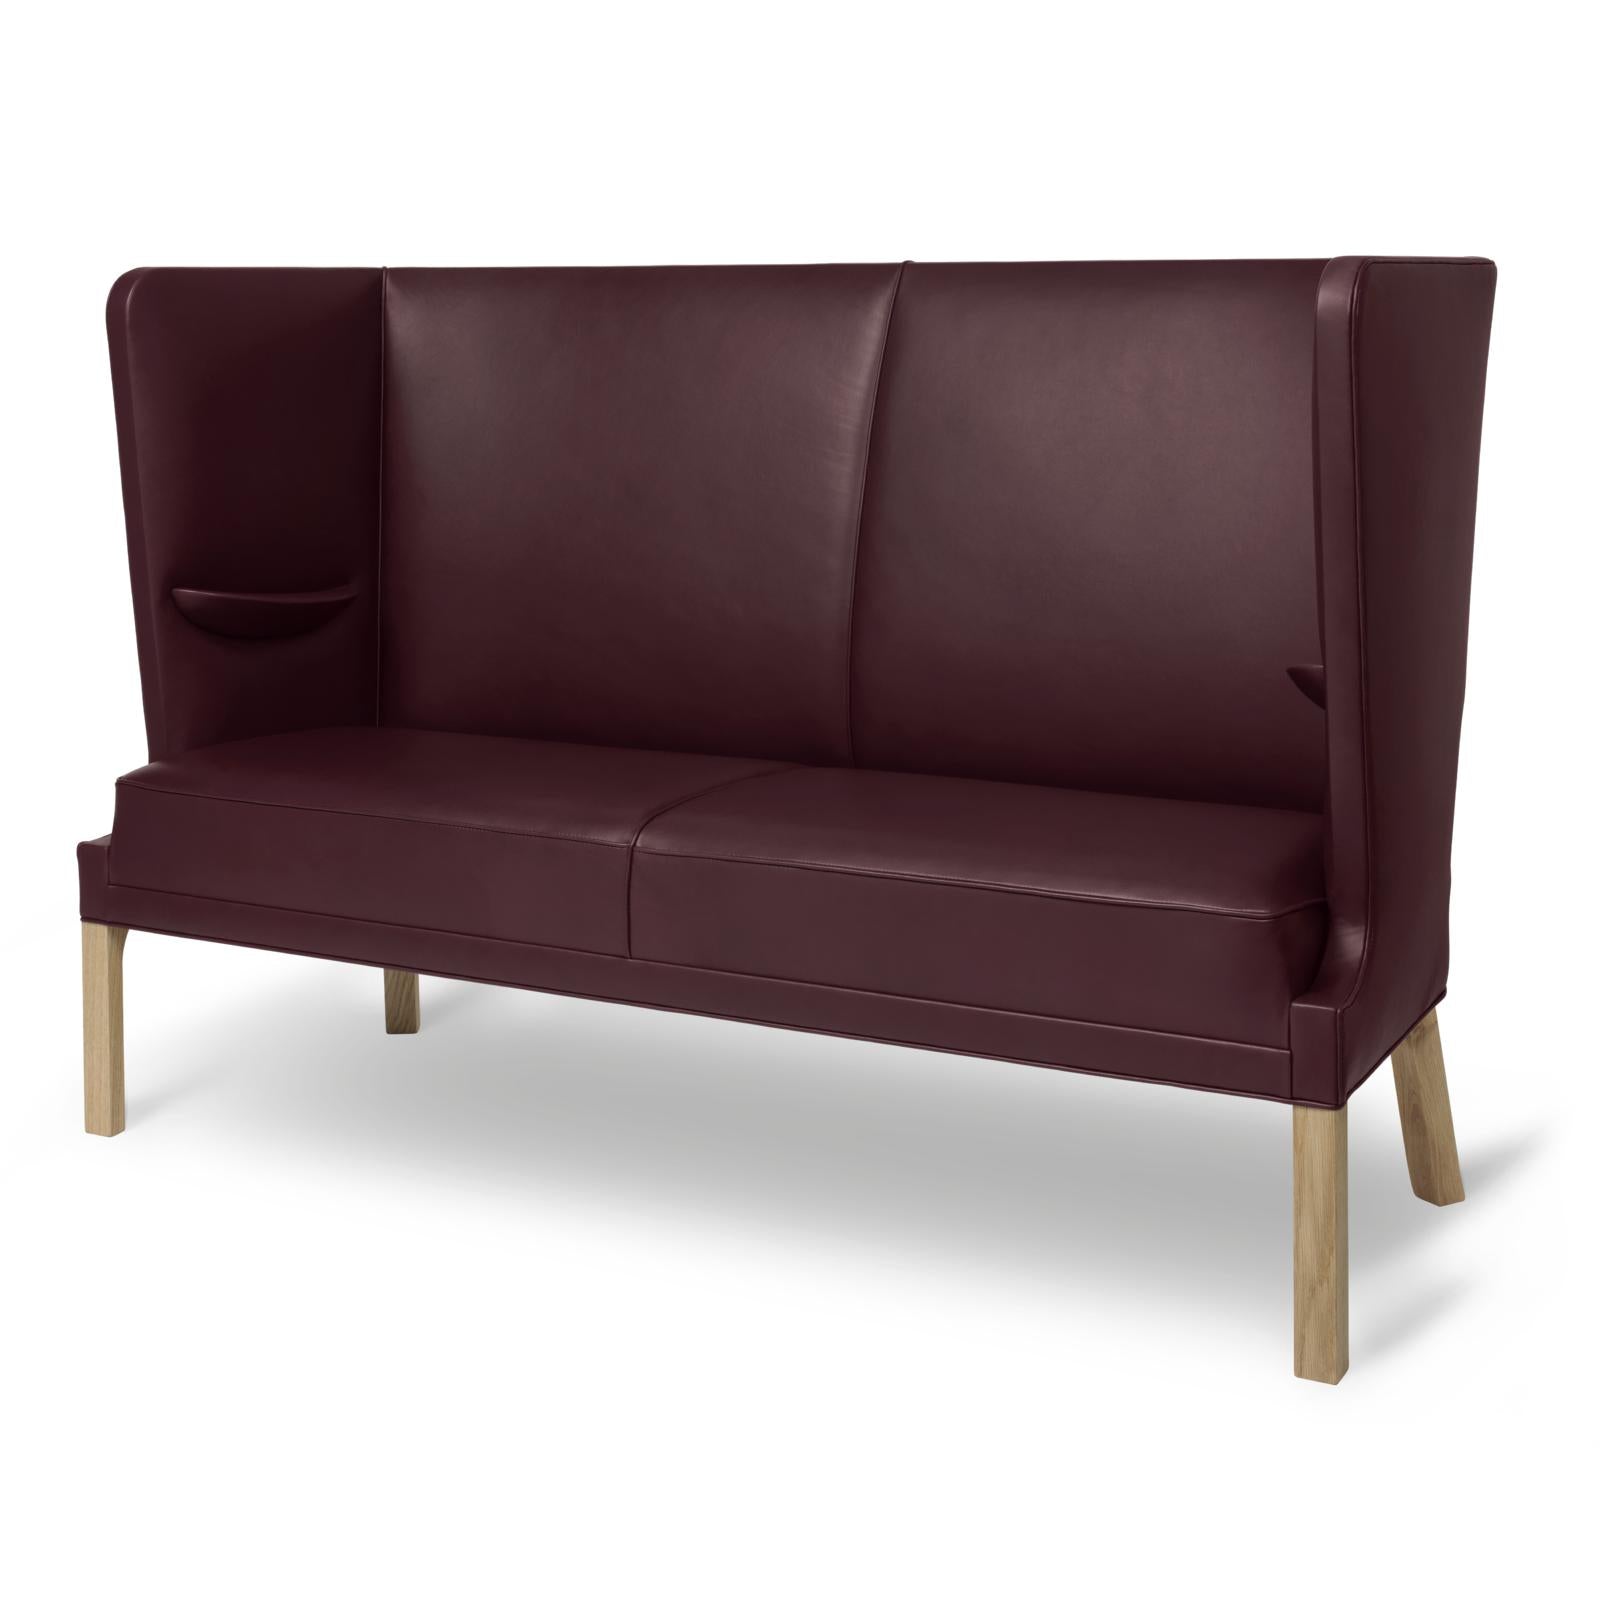 Carl Hansen Fh436 Coupé Sofa, Oiled Oak/Burgundy Leather